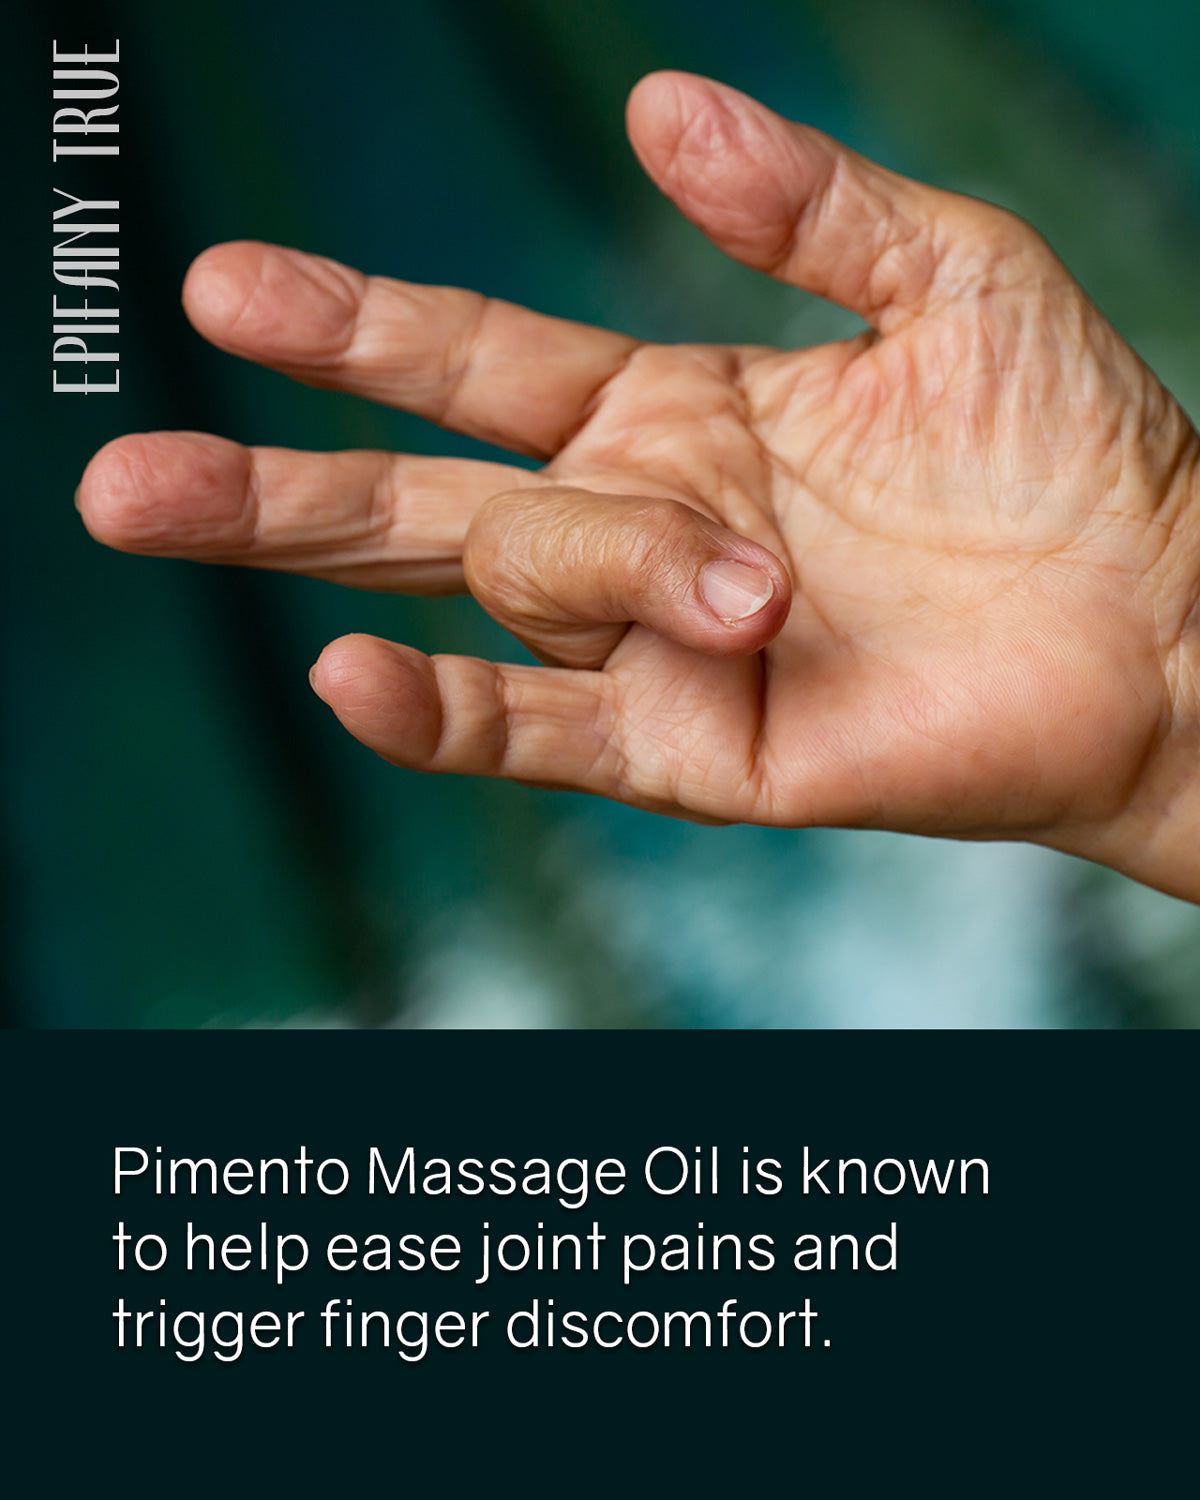 100% Natural Pimento Massage Oil 4oz